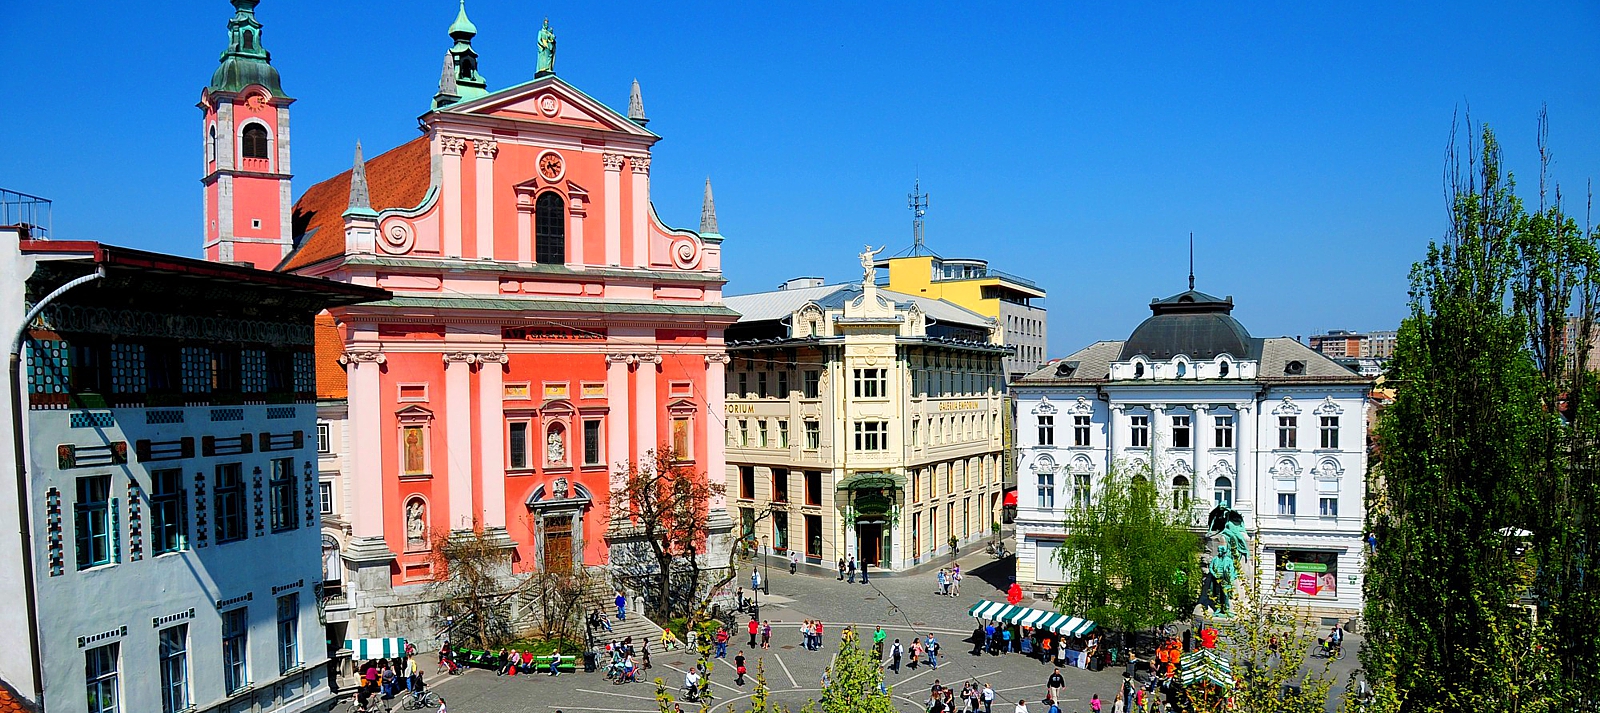 Ljubljana: Franciscan church and Prešeren square